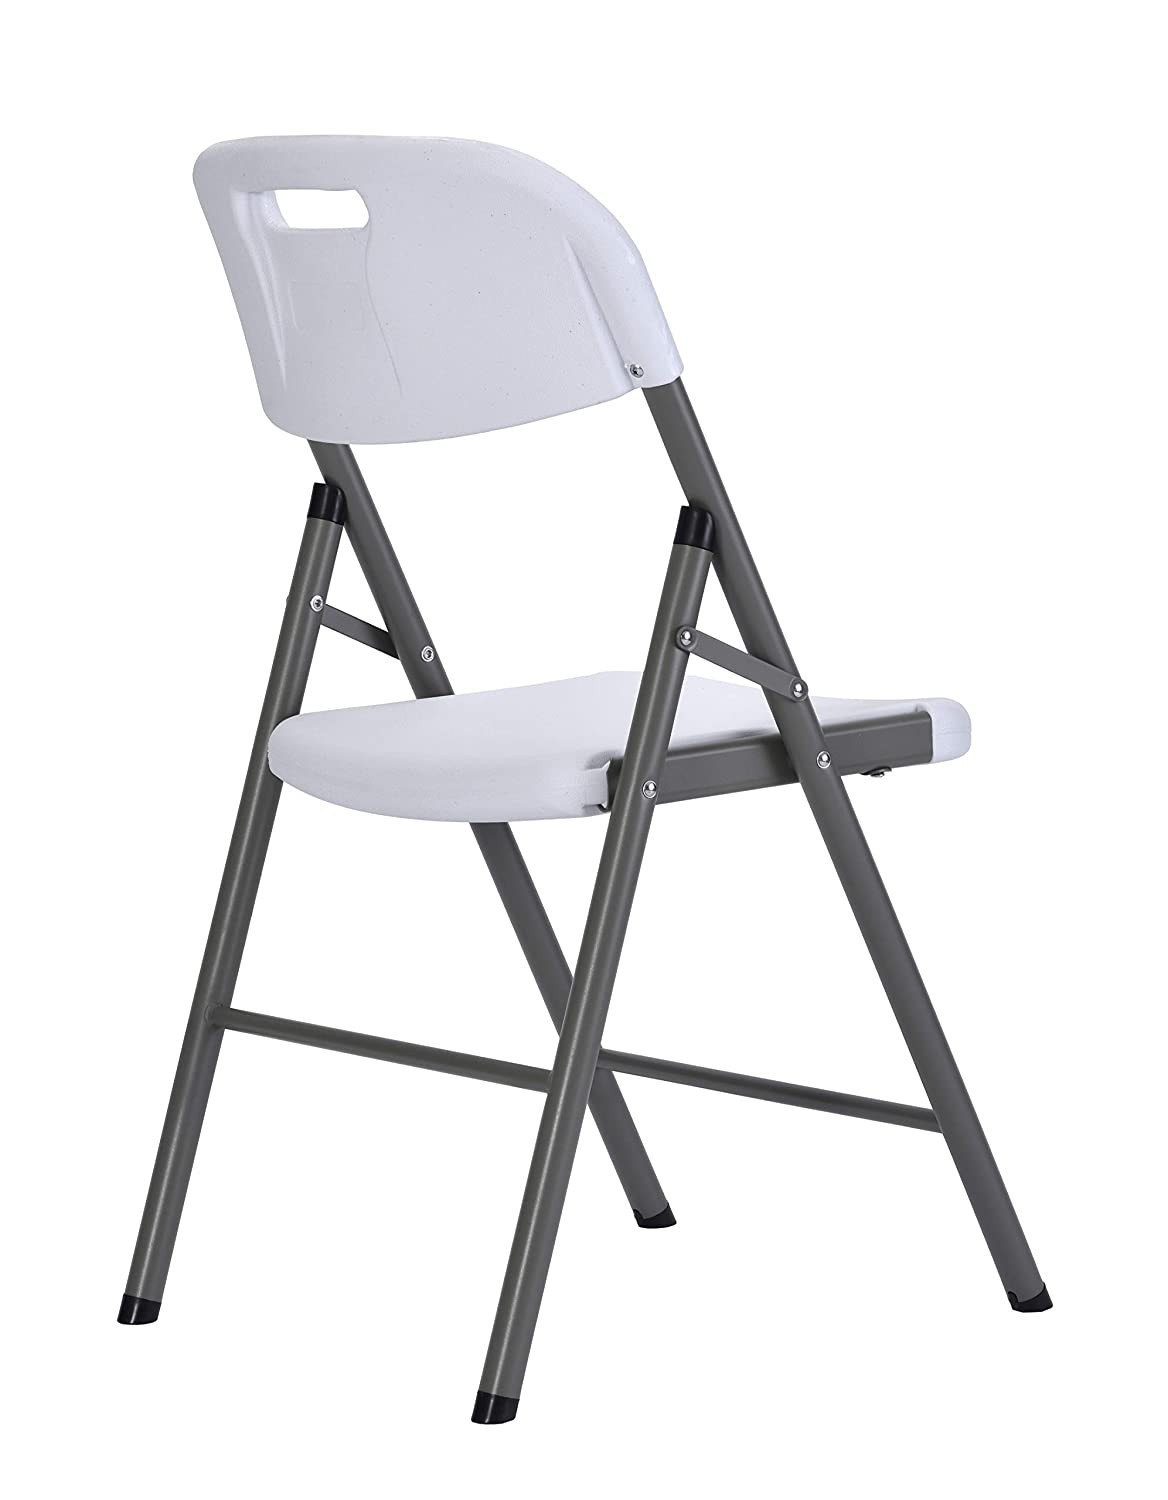 Sulankstoma kėdė plastikinė Premium Balta